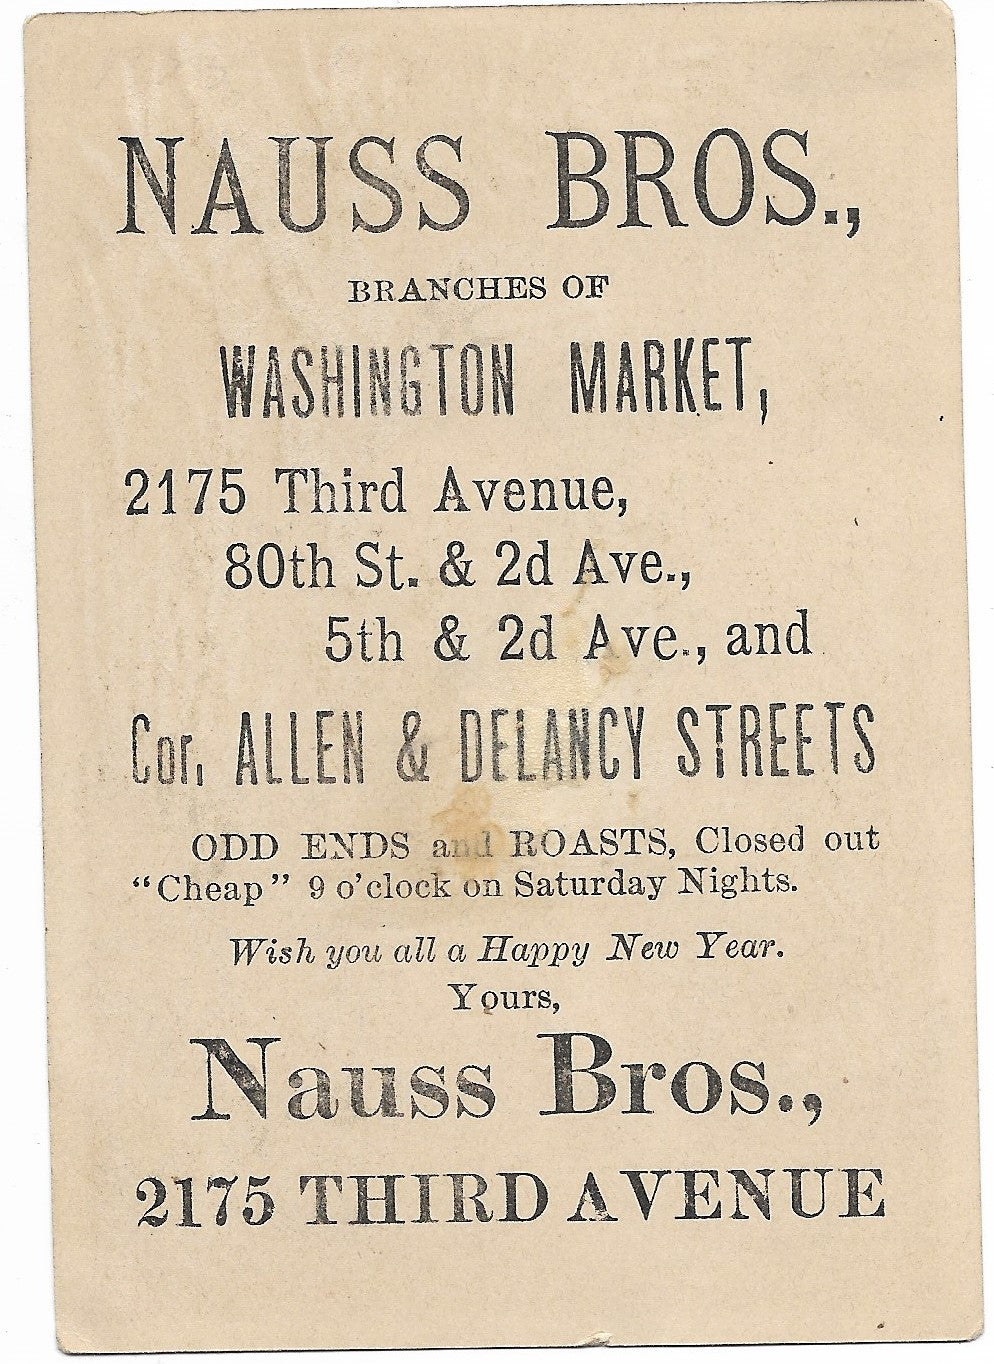 Nauss Bros., Branches of Washington Market Antique Trade Card - 3" x 4.5"